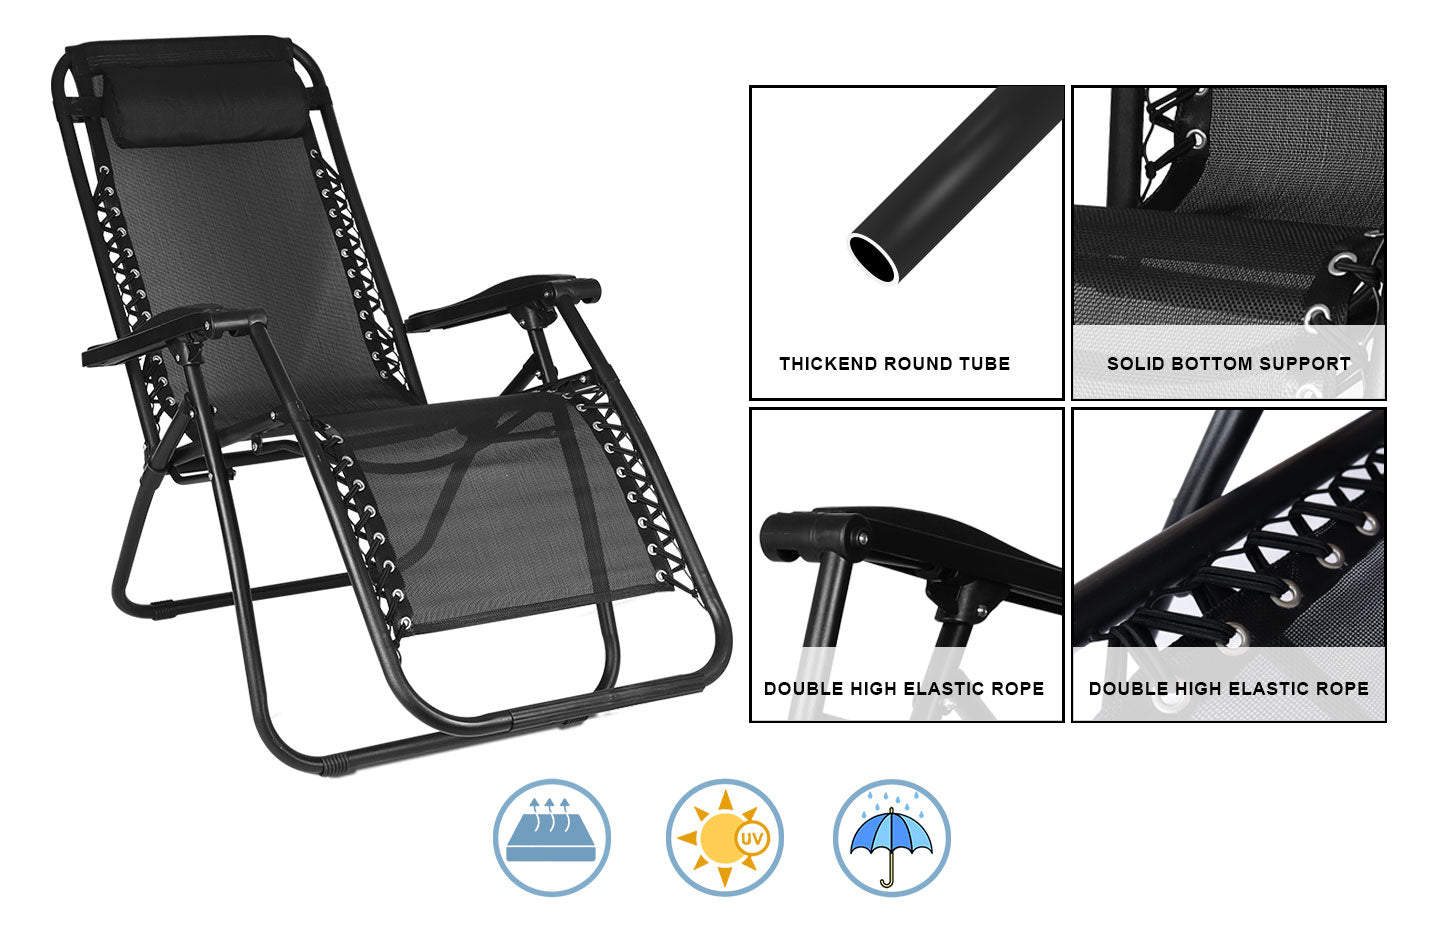 2pcs Sunloungers, Folding Recliner Garden Chair leisure Beach Chair With headrest For Garden Outdoor Camping